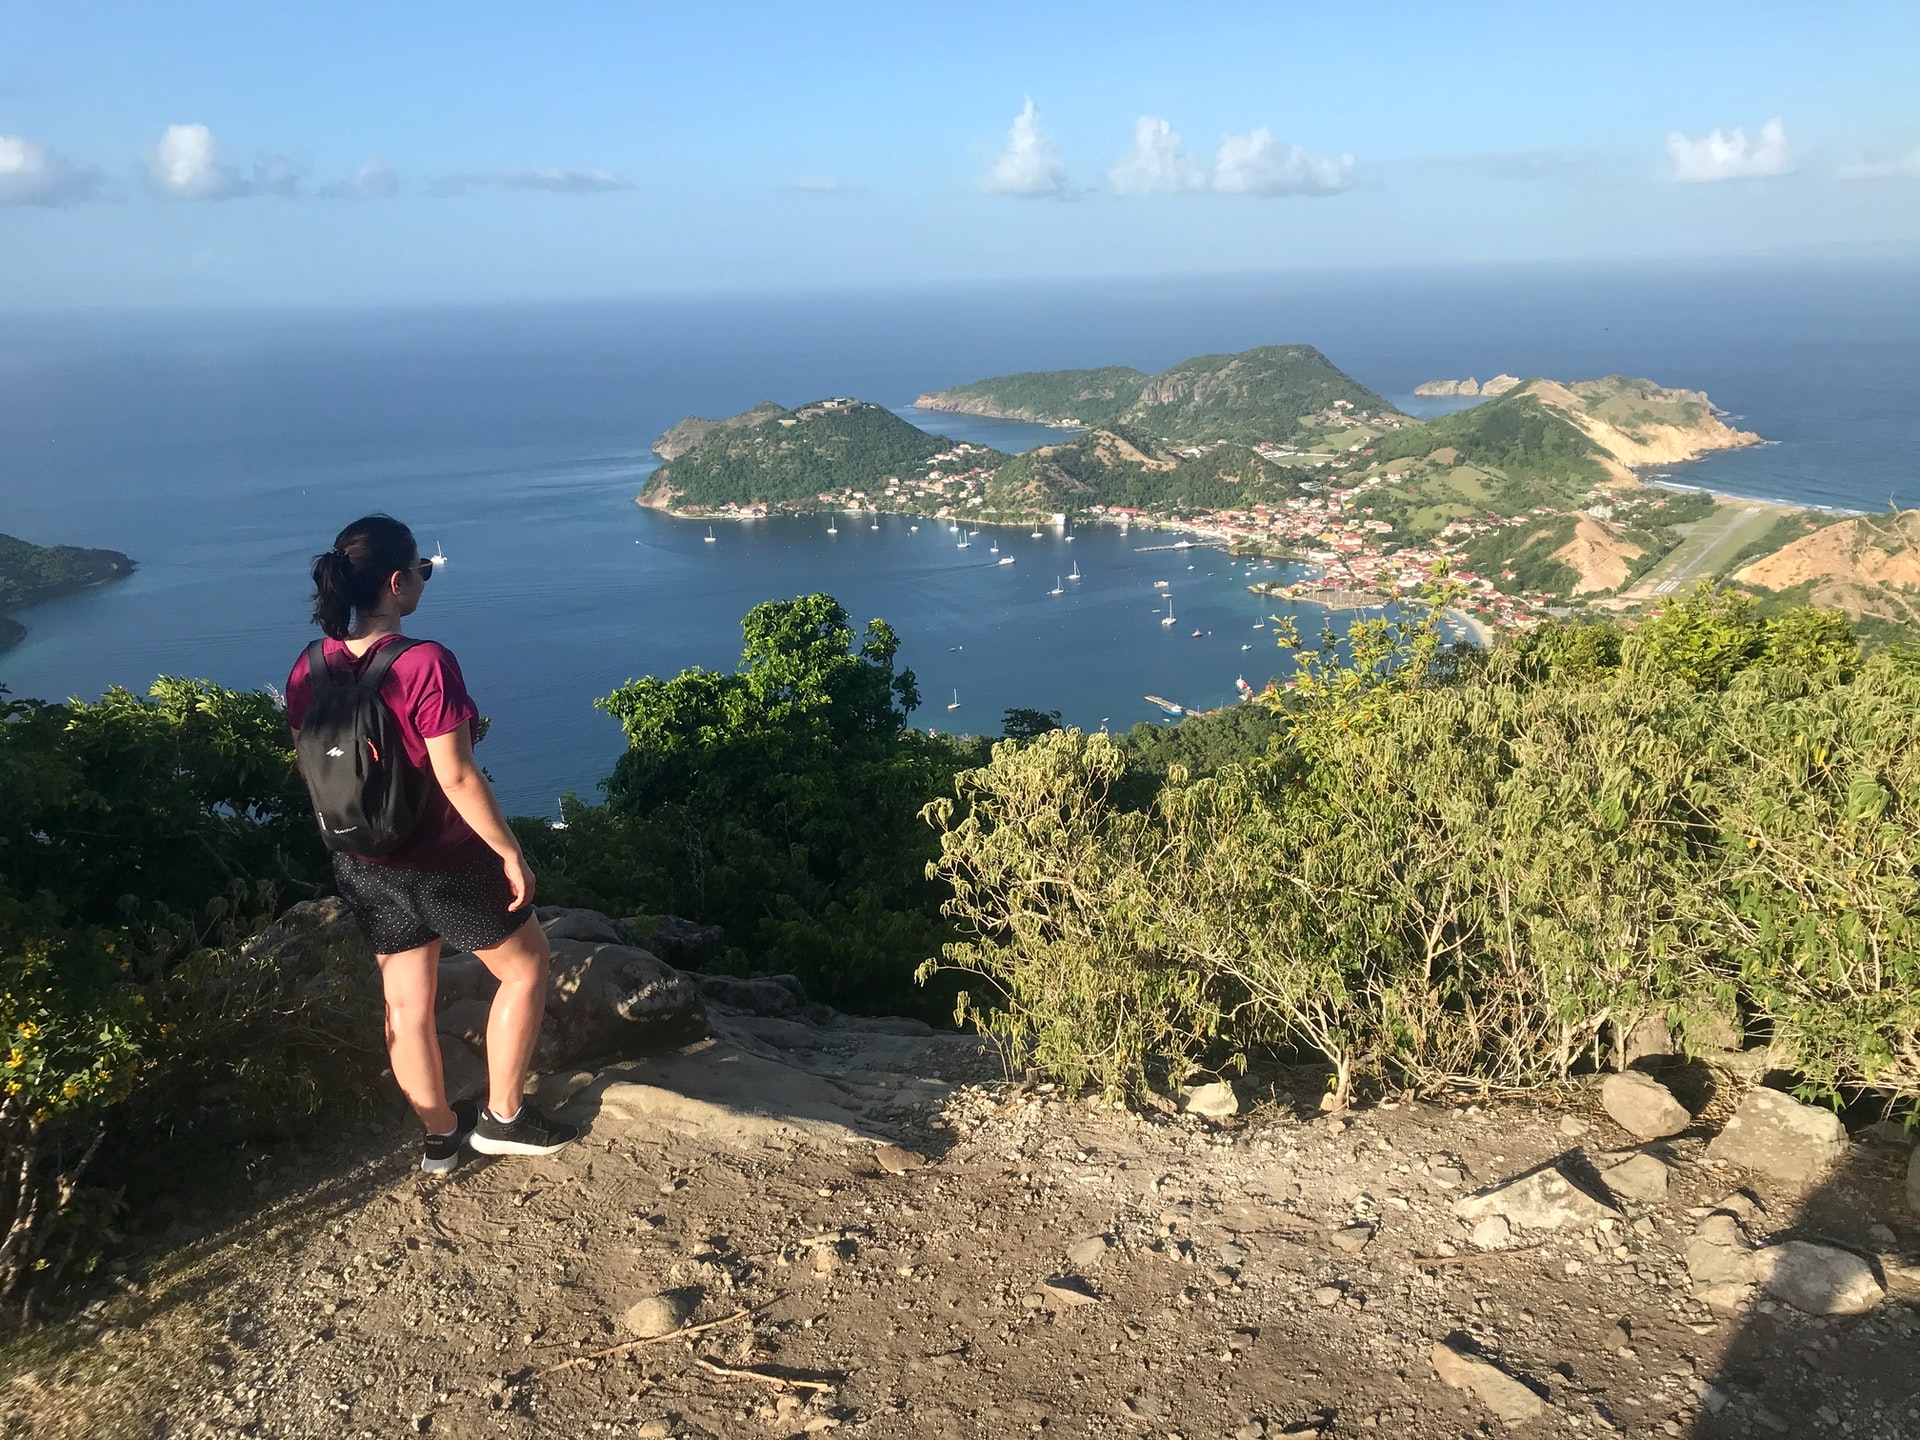 Plages, montagnes et nature luxuriante : la beauté de Guadeloupe